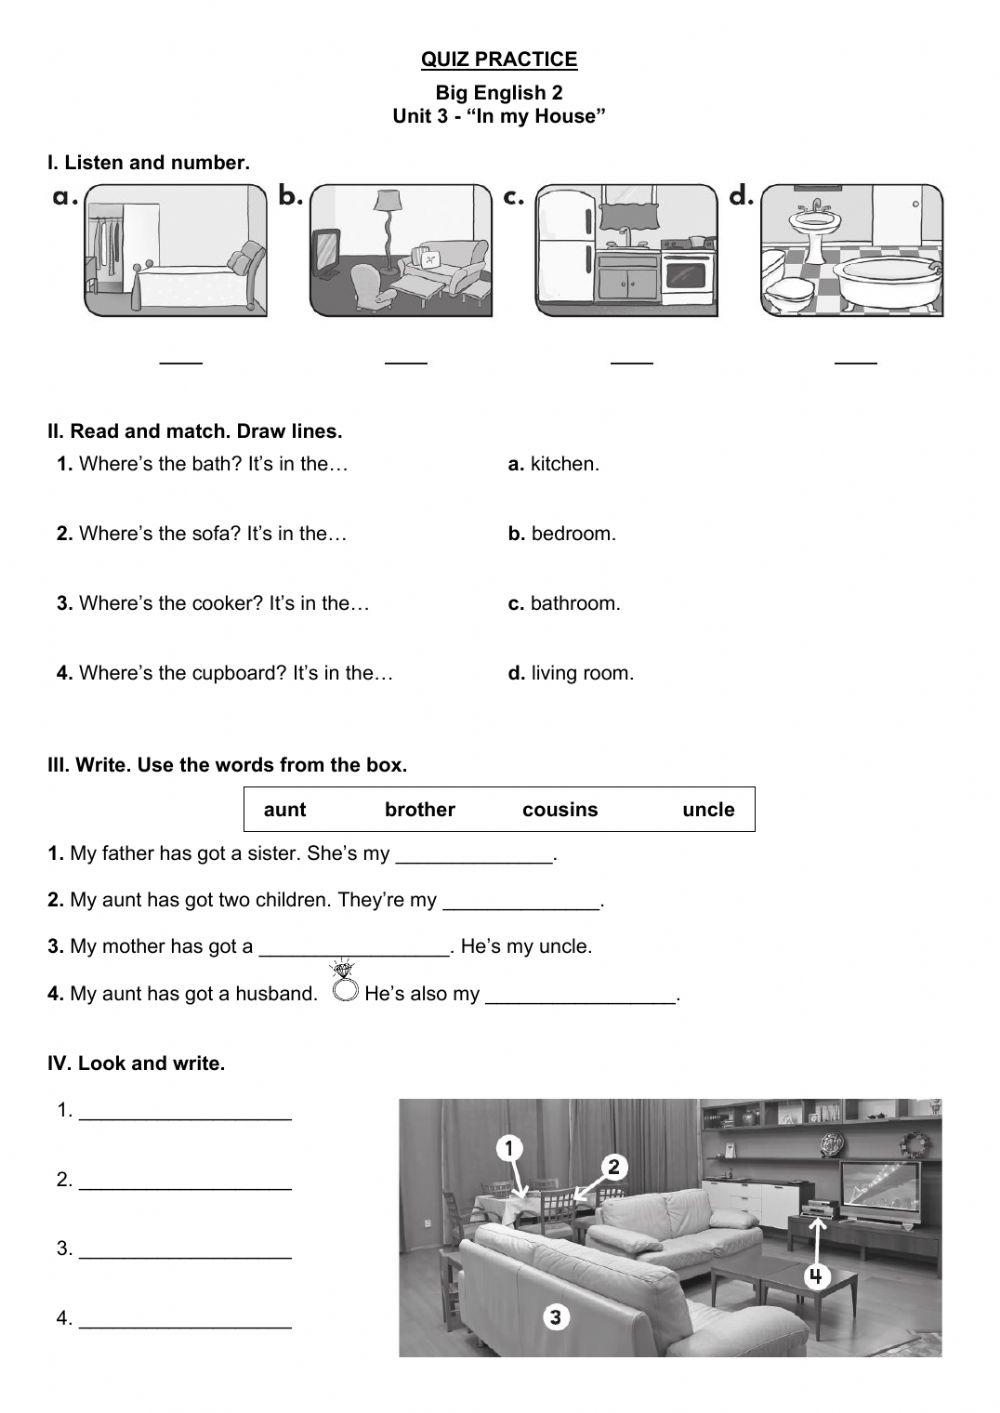 Quiz Practice - Unit 3